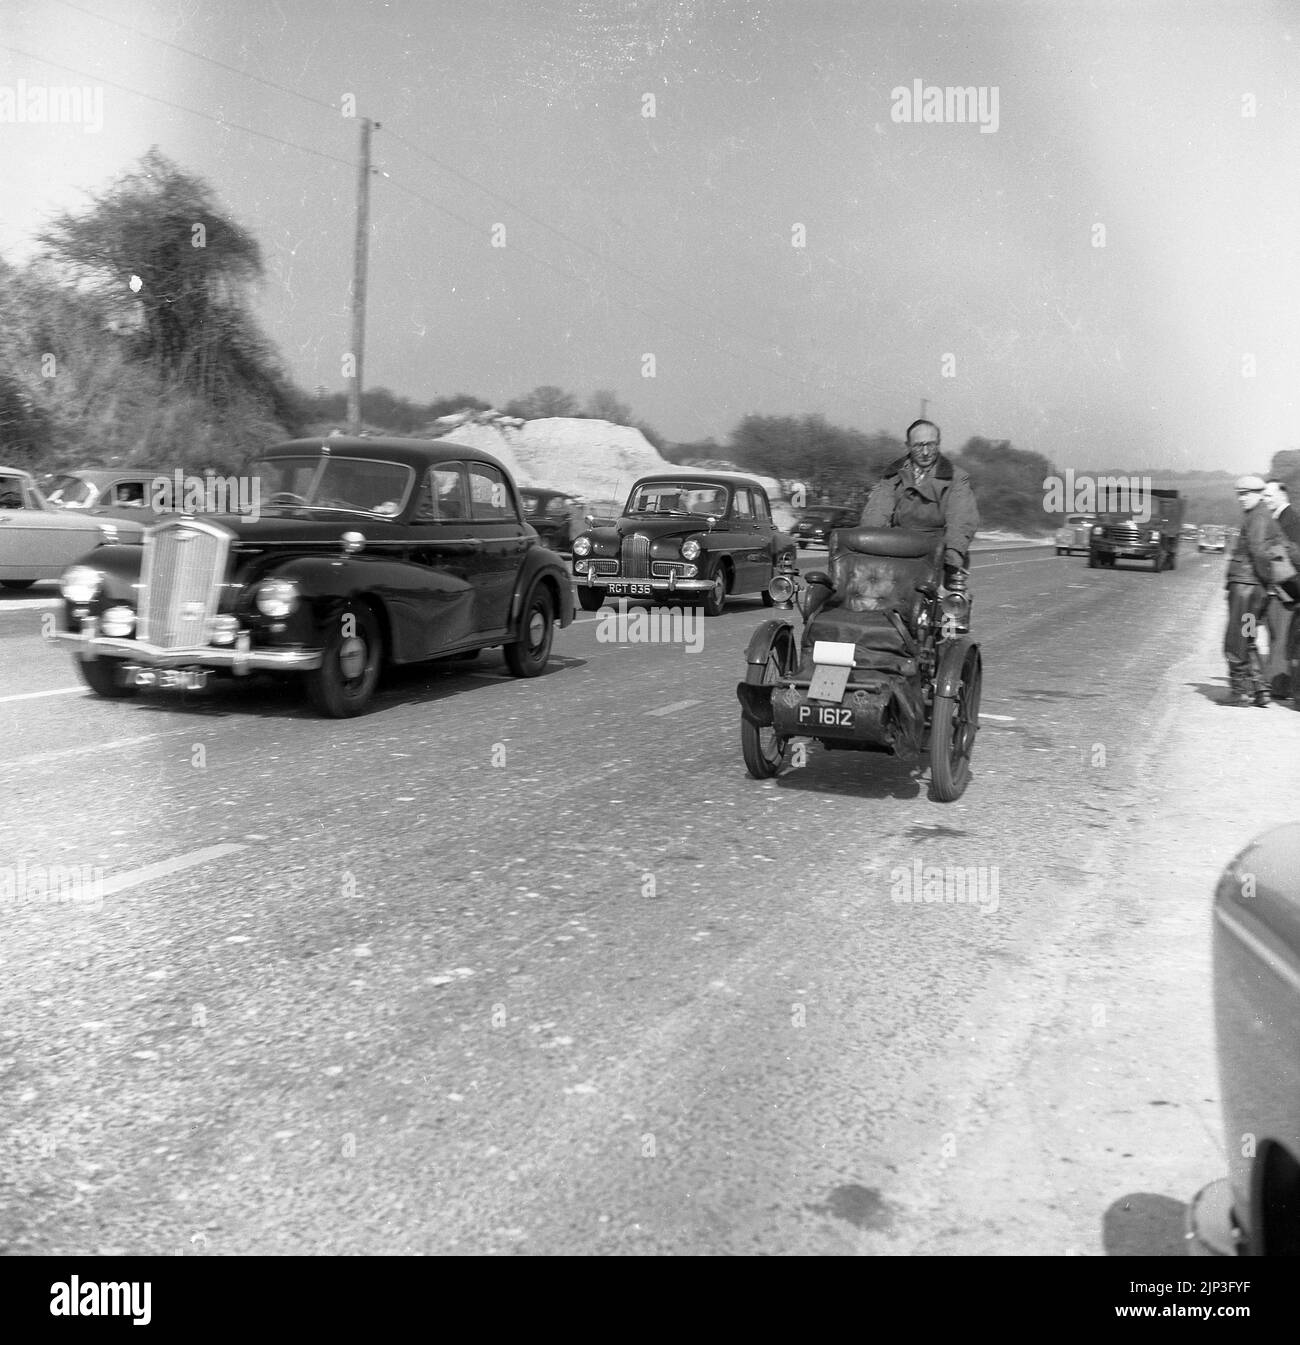 1960, storica, corsa di auto veterana, Londra a Brighton, fuori sulla A23 andando verso Brighton, un triciclo d'epoca ( numberplate P 162) tre ruote pre-1905 veicolo, con sedile anteriore. Foto Stock